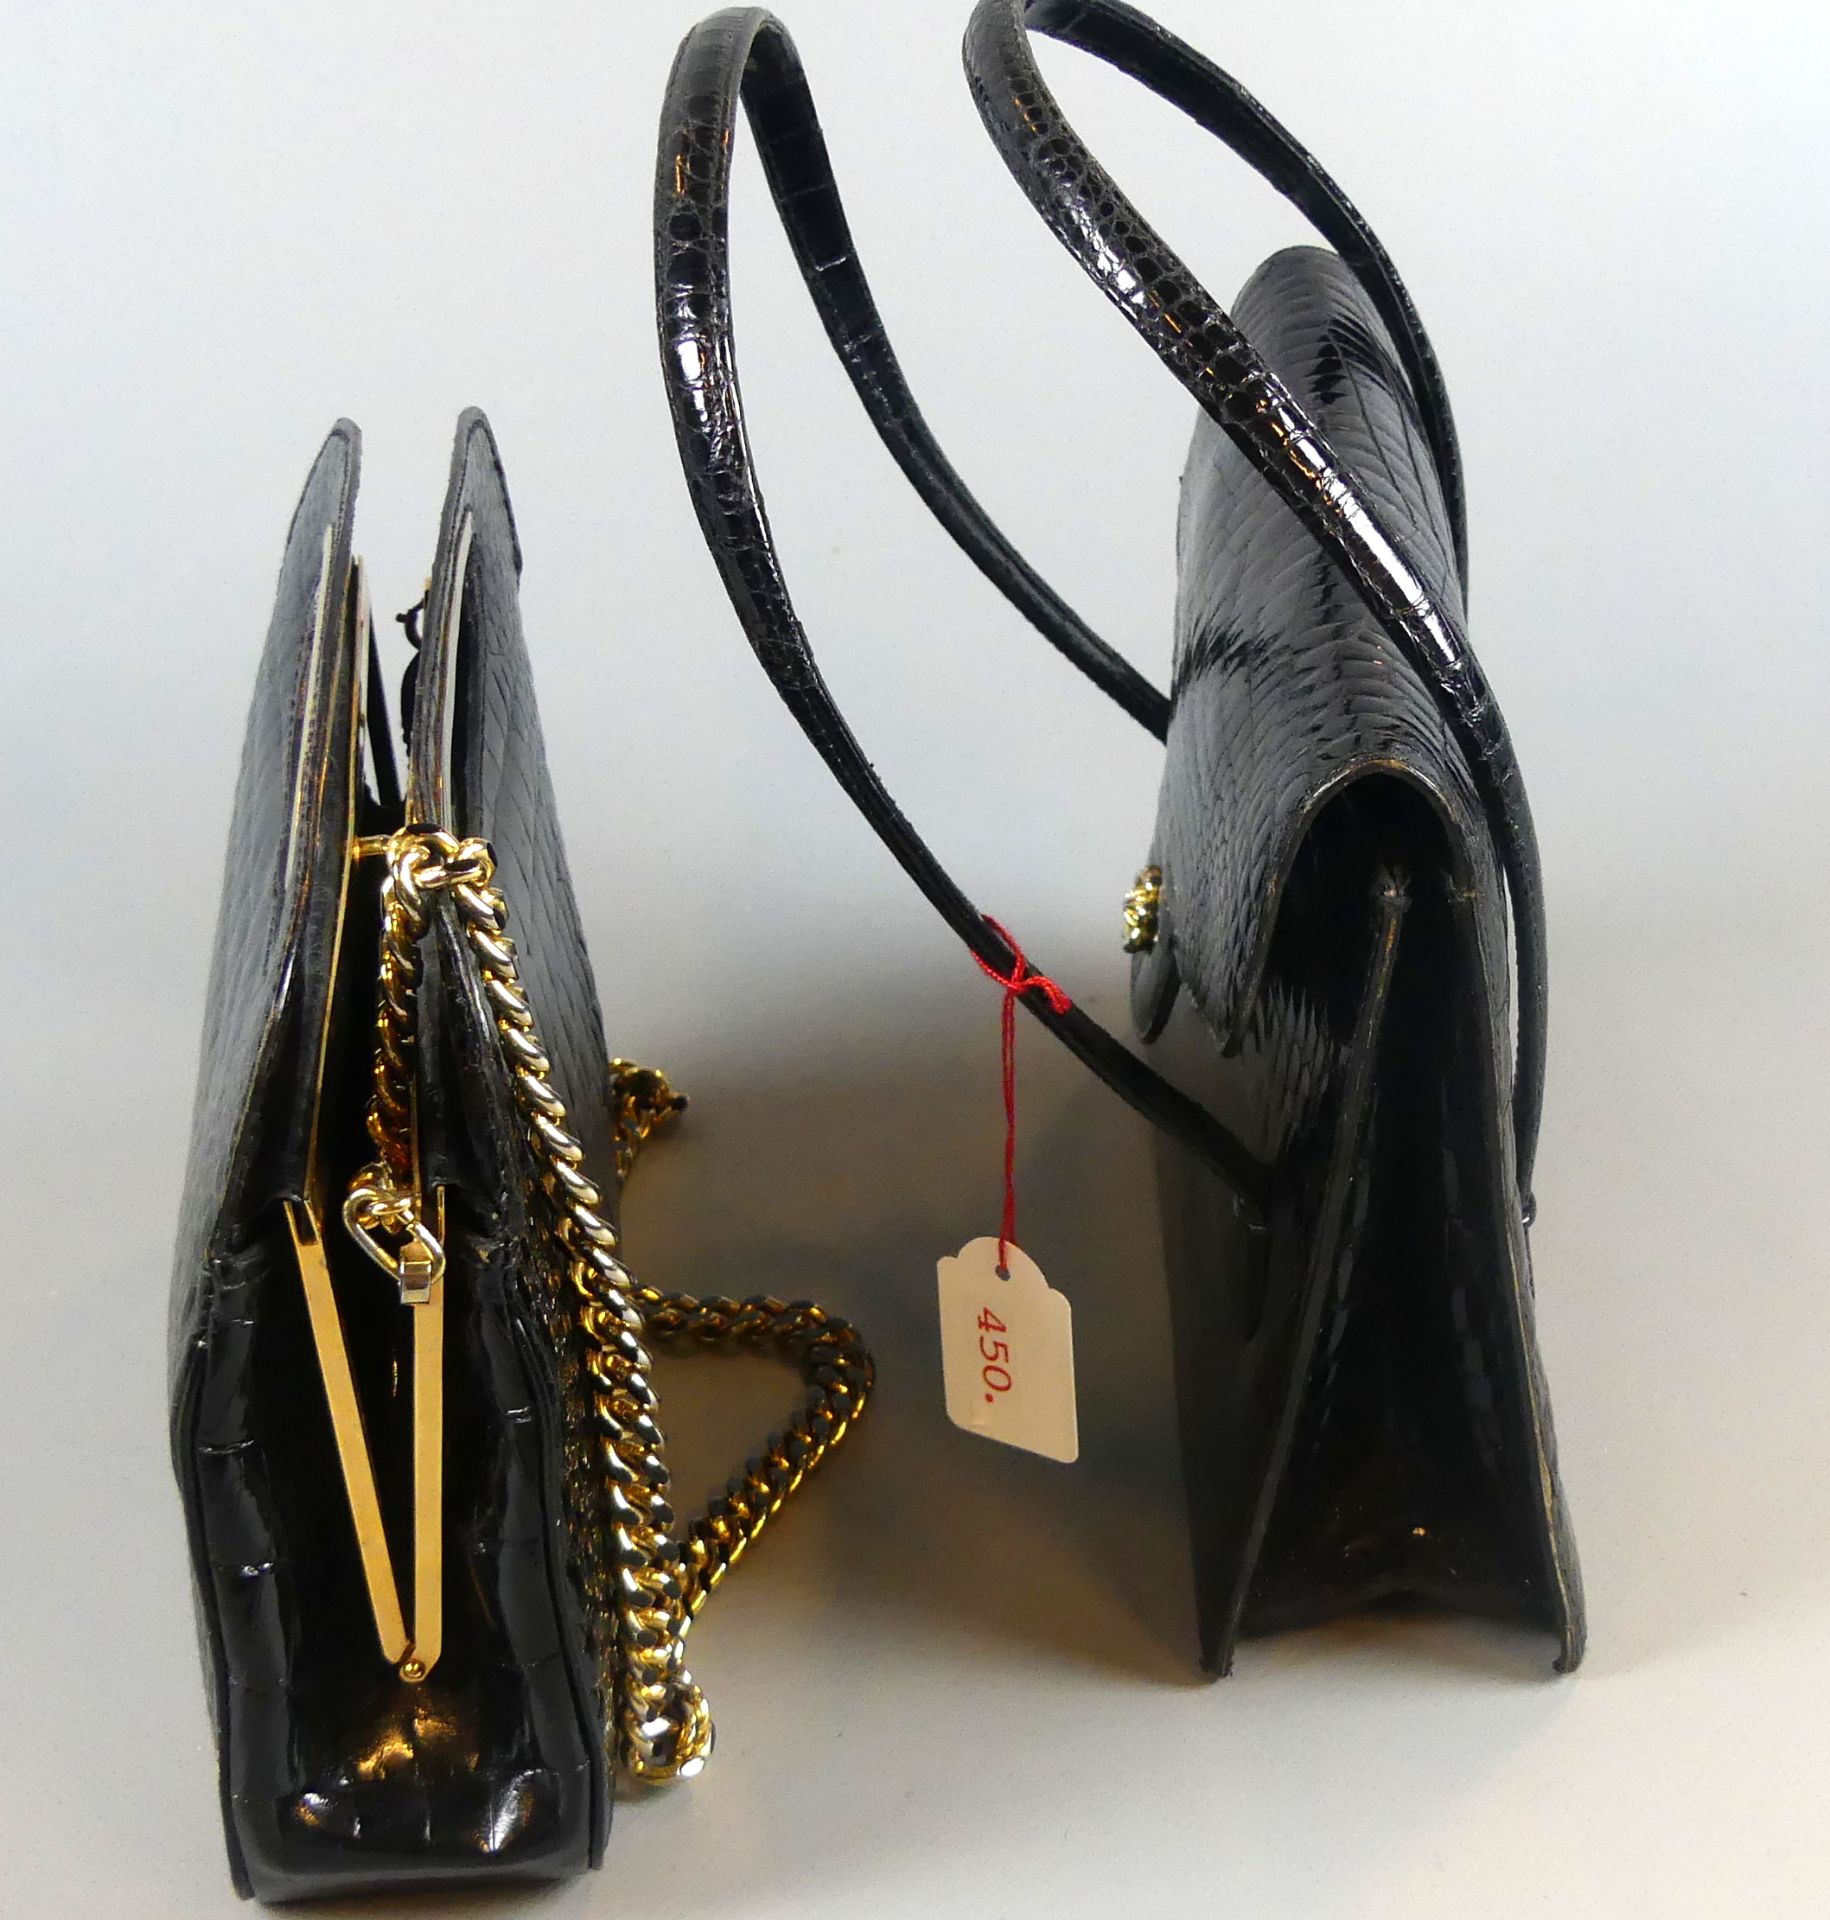 2 Damenhandtaschen (Abend-), schwarz, Leder, eine FRANZ SAUER - Image 2 of 2